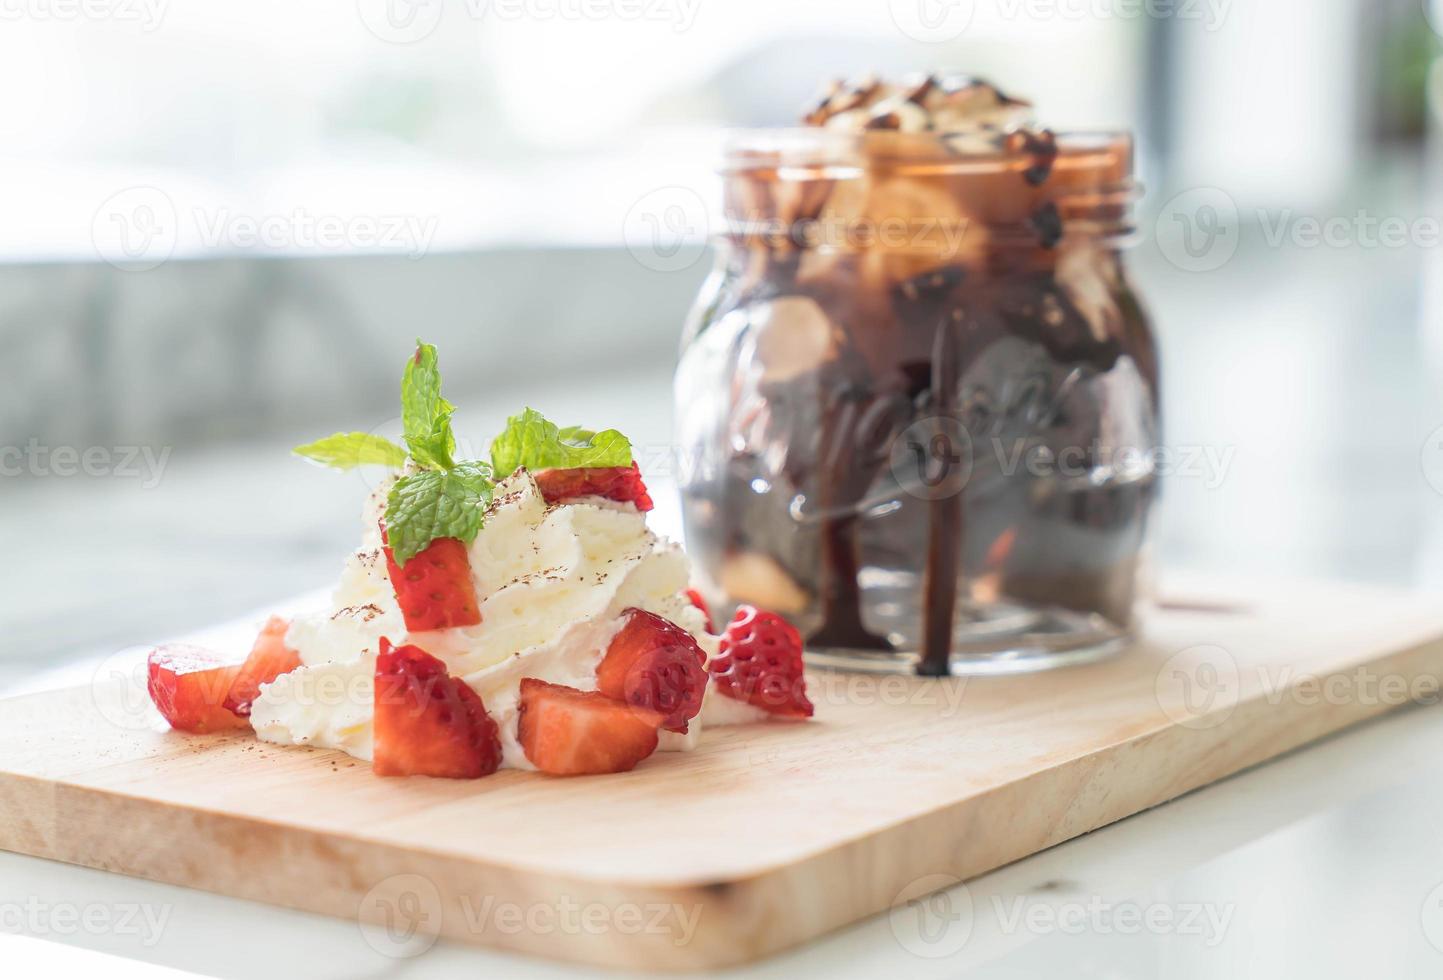 chocolade brownies met vanille-ijs, slagroom en aardbei foto